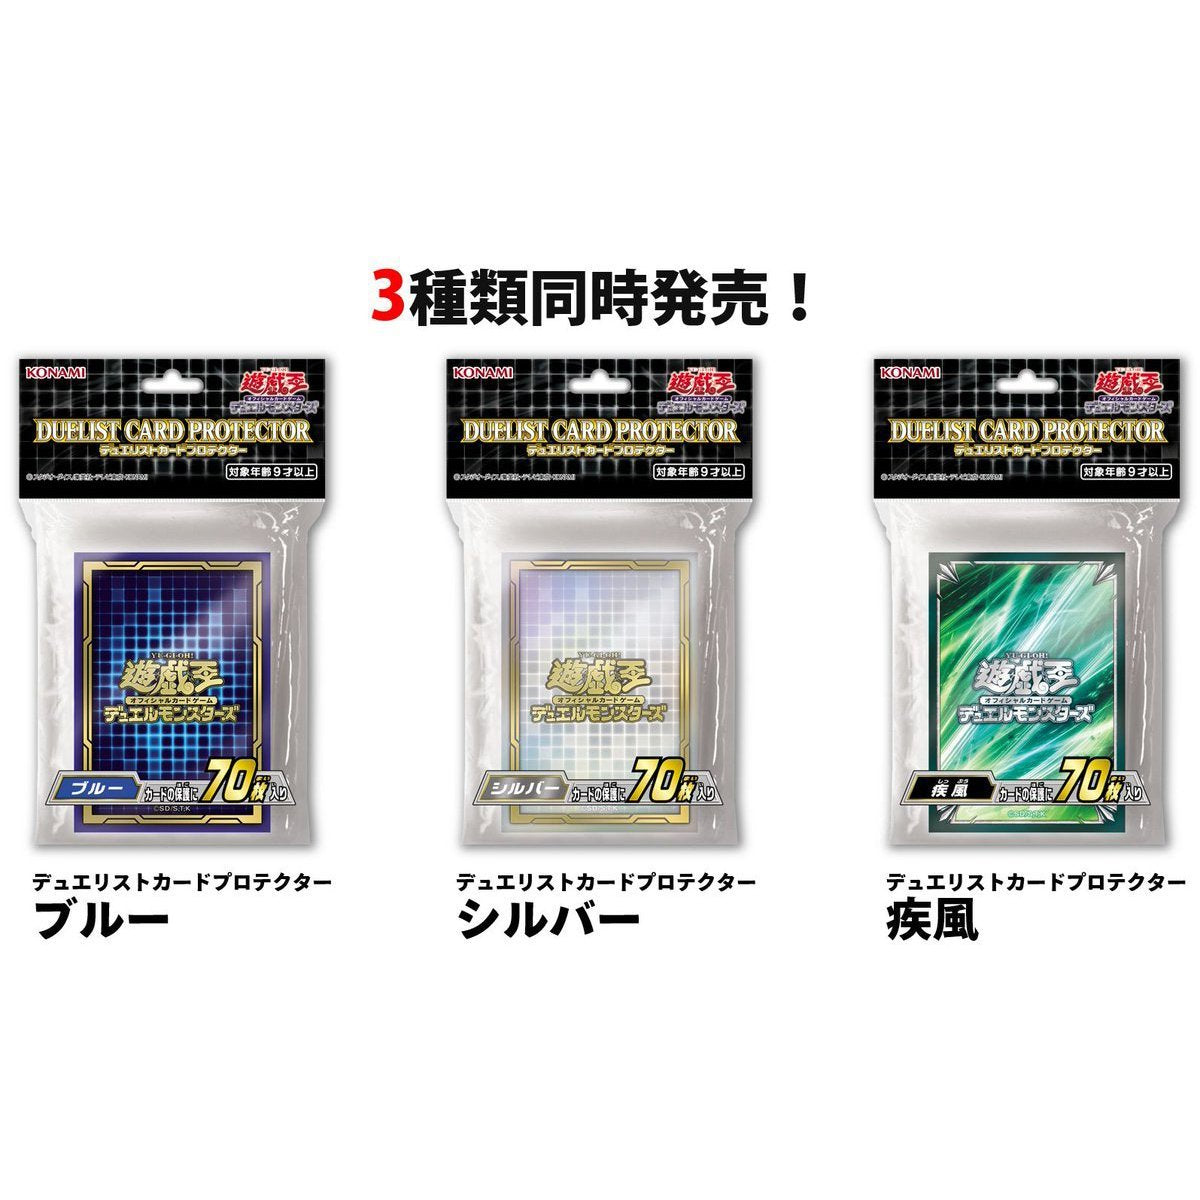 Yu-Gi-Oh! OCG Duelist Card Protector "Silver" (CG1732)-Konami-Ace Cards & Collectibles